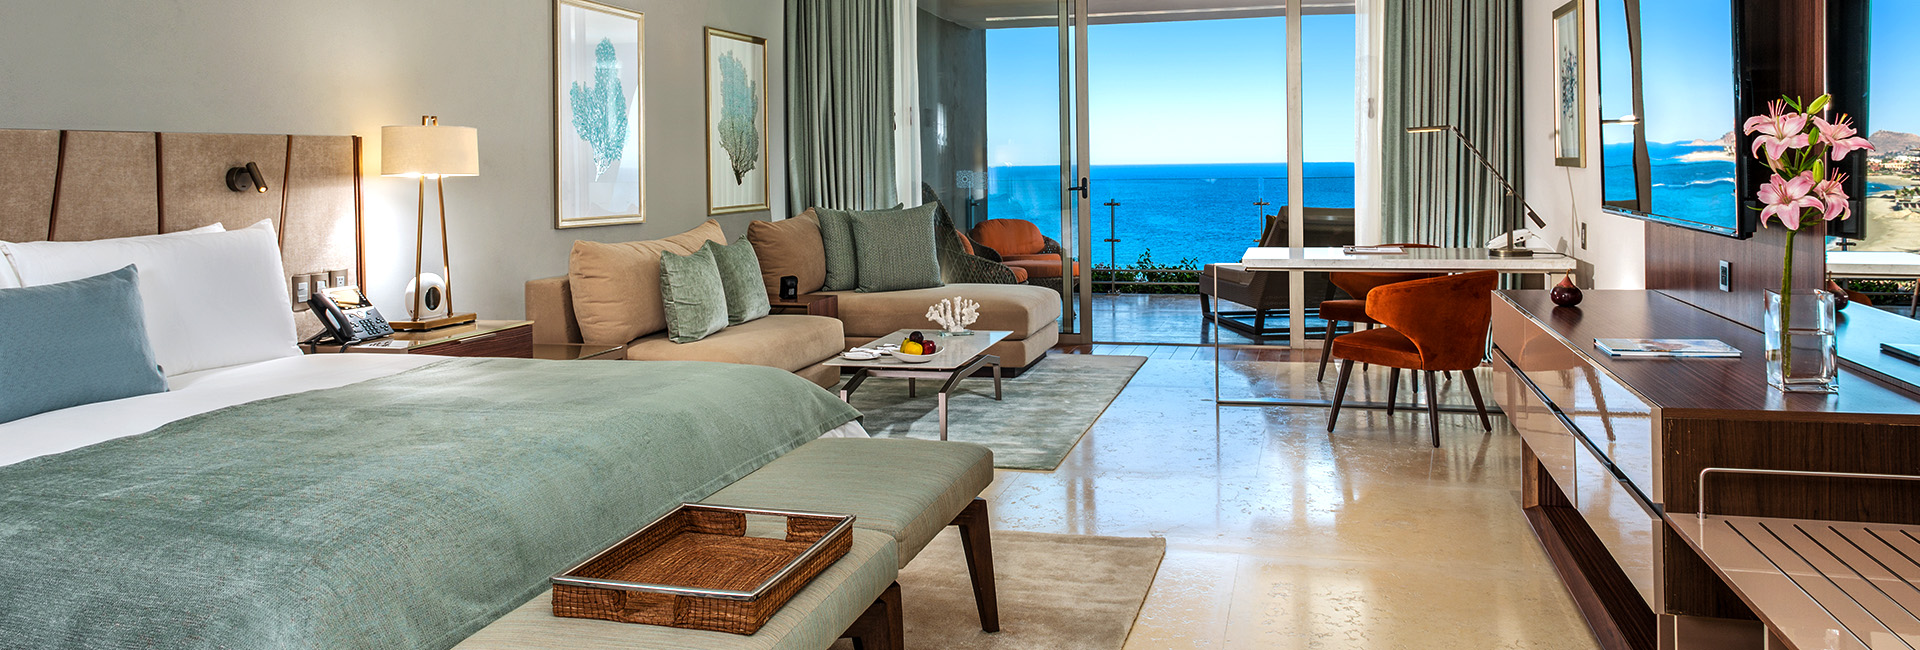 Ambassador Suite Ocean View at Grand Velas Los Cabos, Mexico